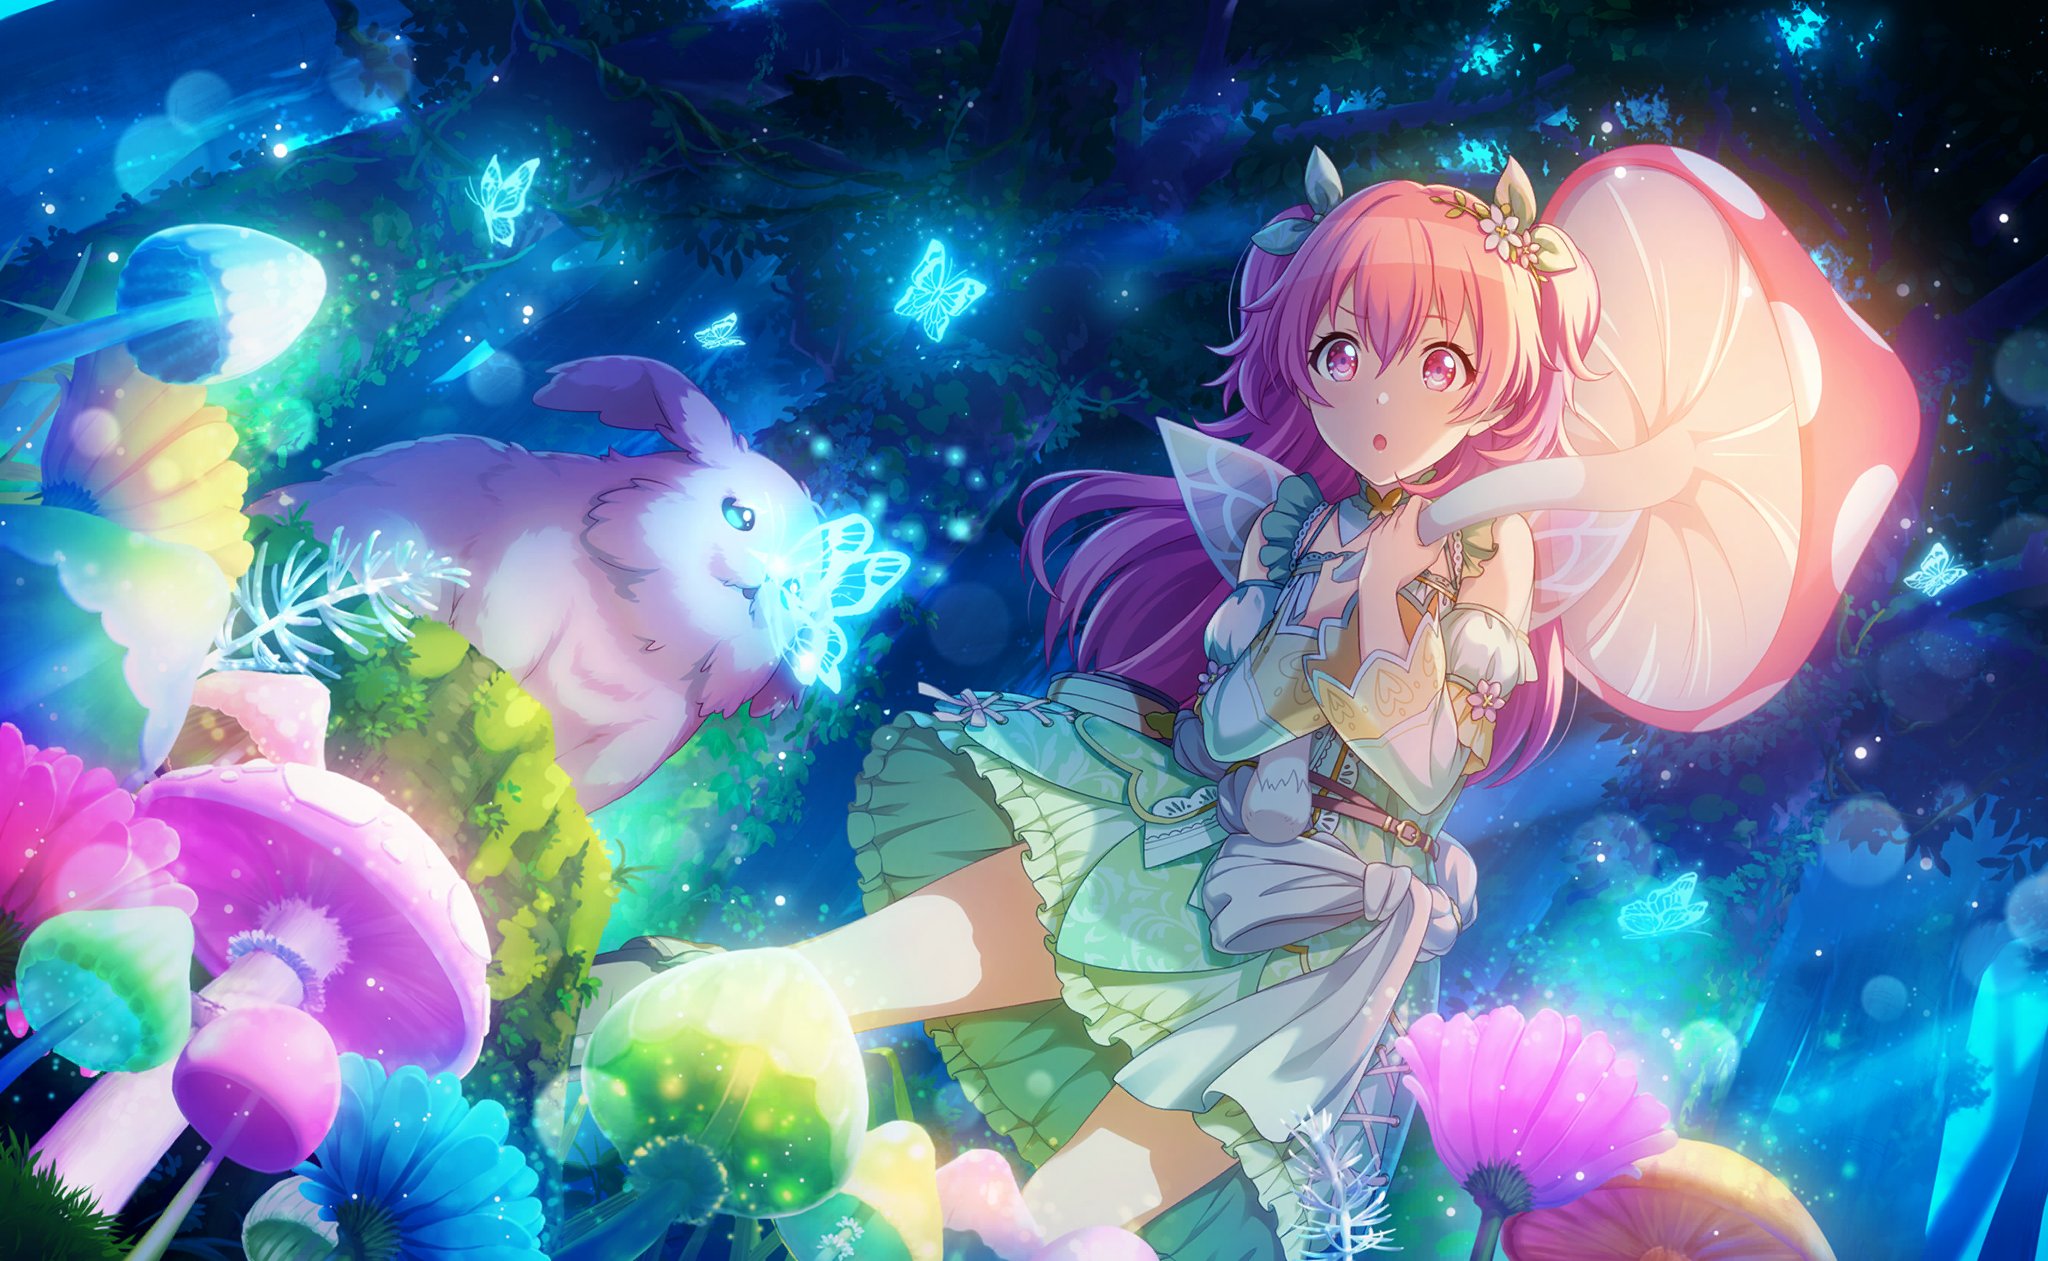 Momoi Airi Sekai Colorful Stage! feat. Hatsune Miku Anime Image Board